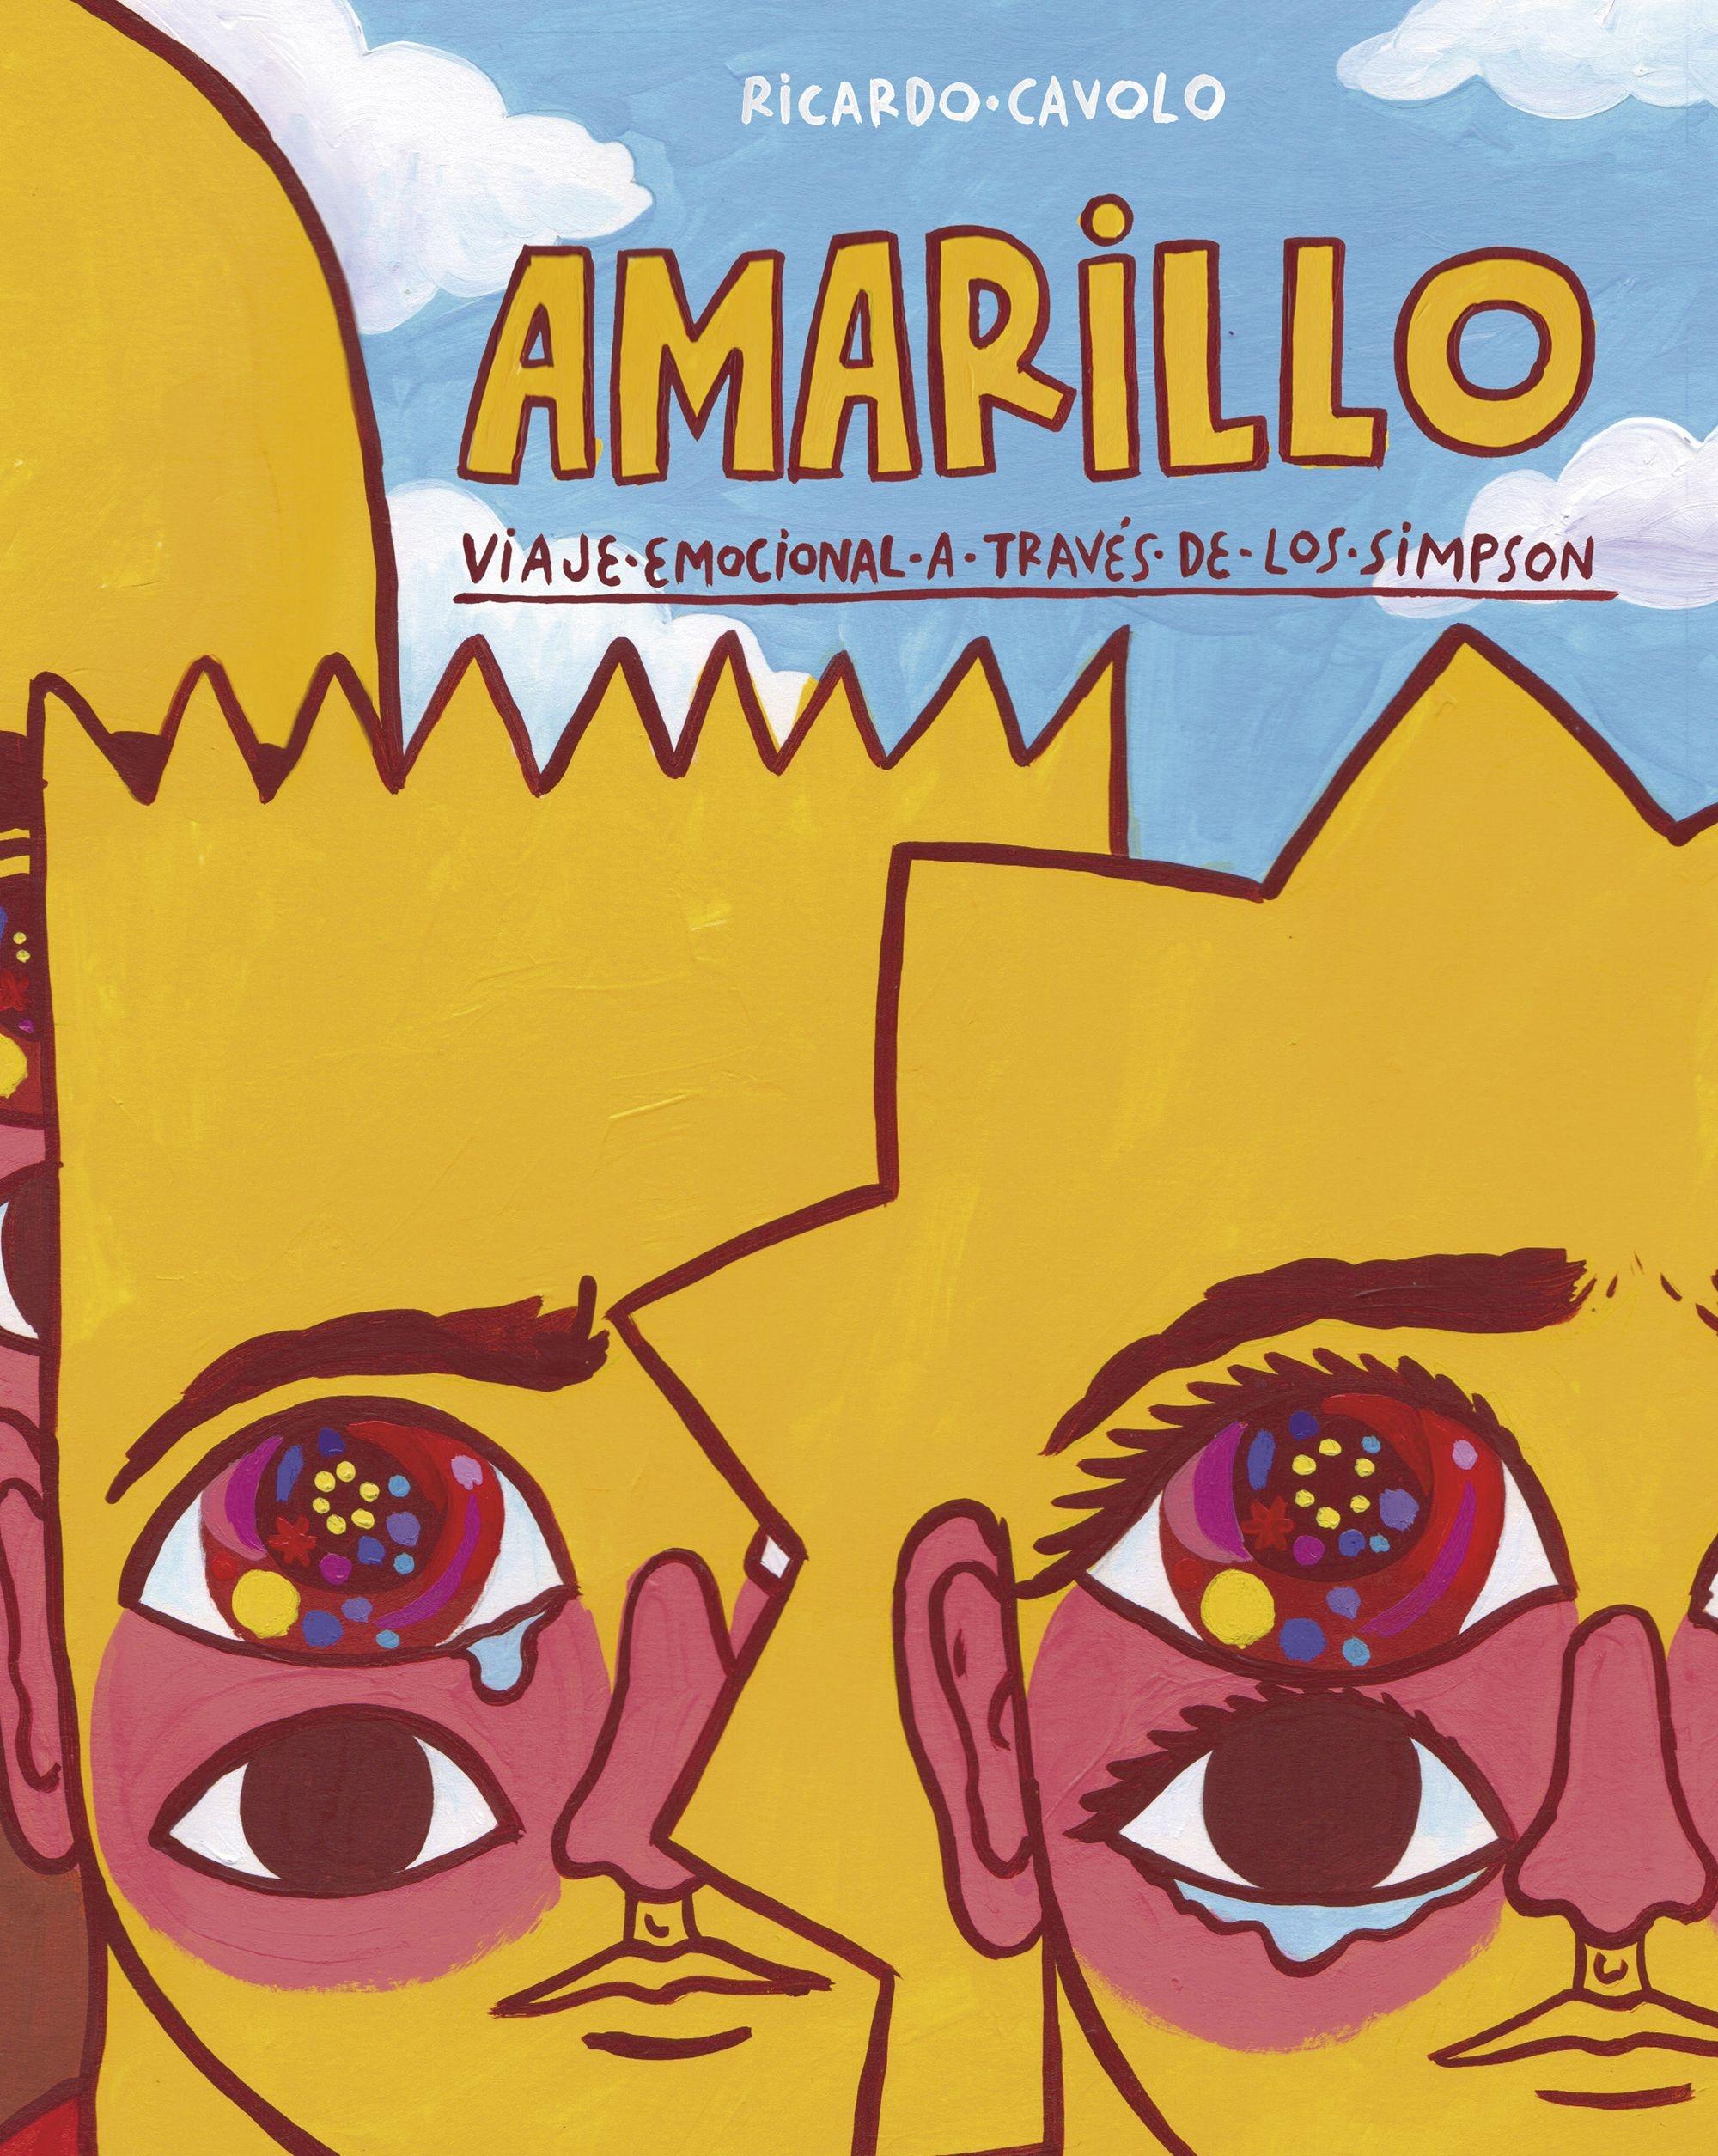 Amarillo "Viaje Emocional a Través de "Los Simpson""